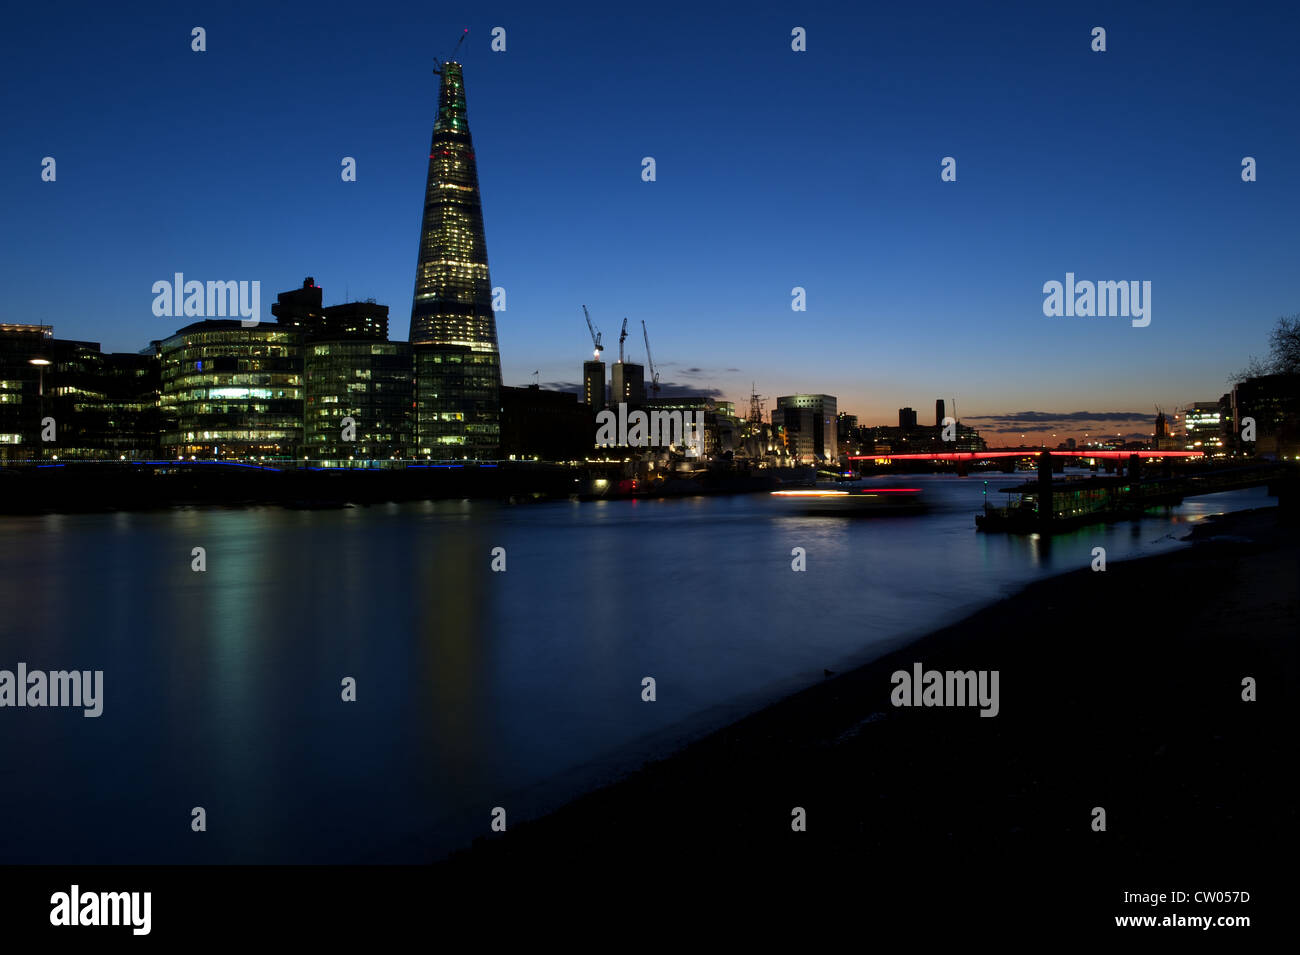 Rives de la Tamise à Londres : le crépuscule Shard building, le HMS Belfast et London Bridge illuminé, Londres, Royaume-Uni Banque D'Images